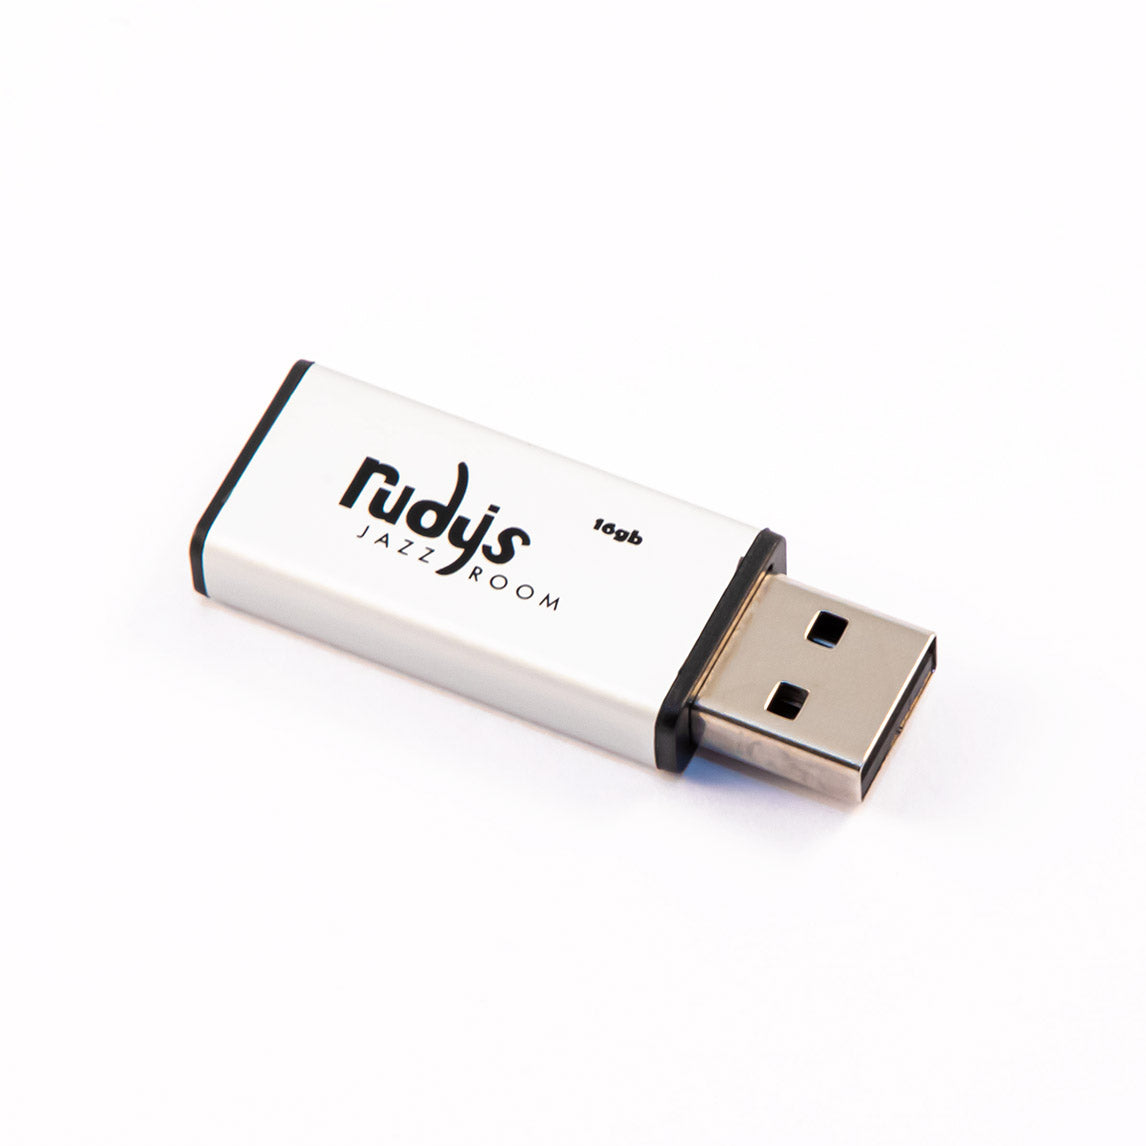 Rudy's 16GB Mini USB Flash Drive